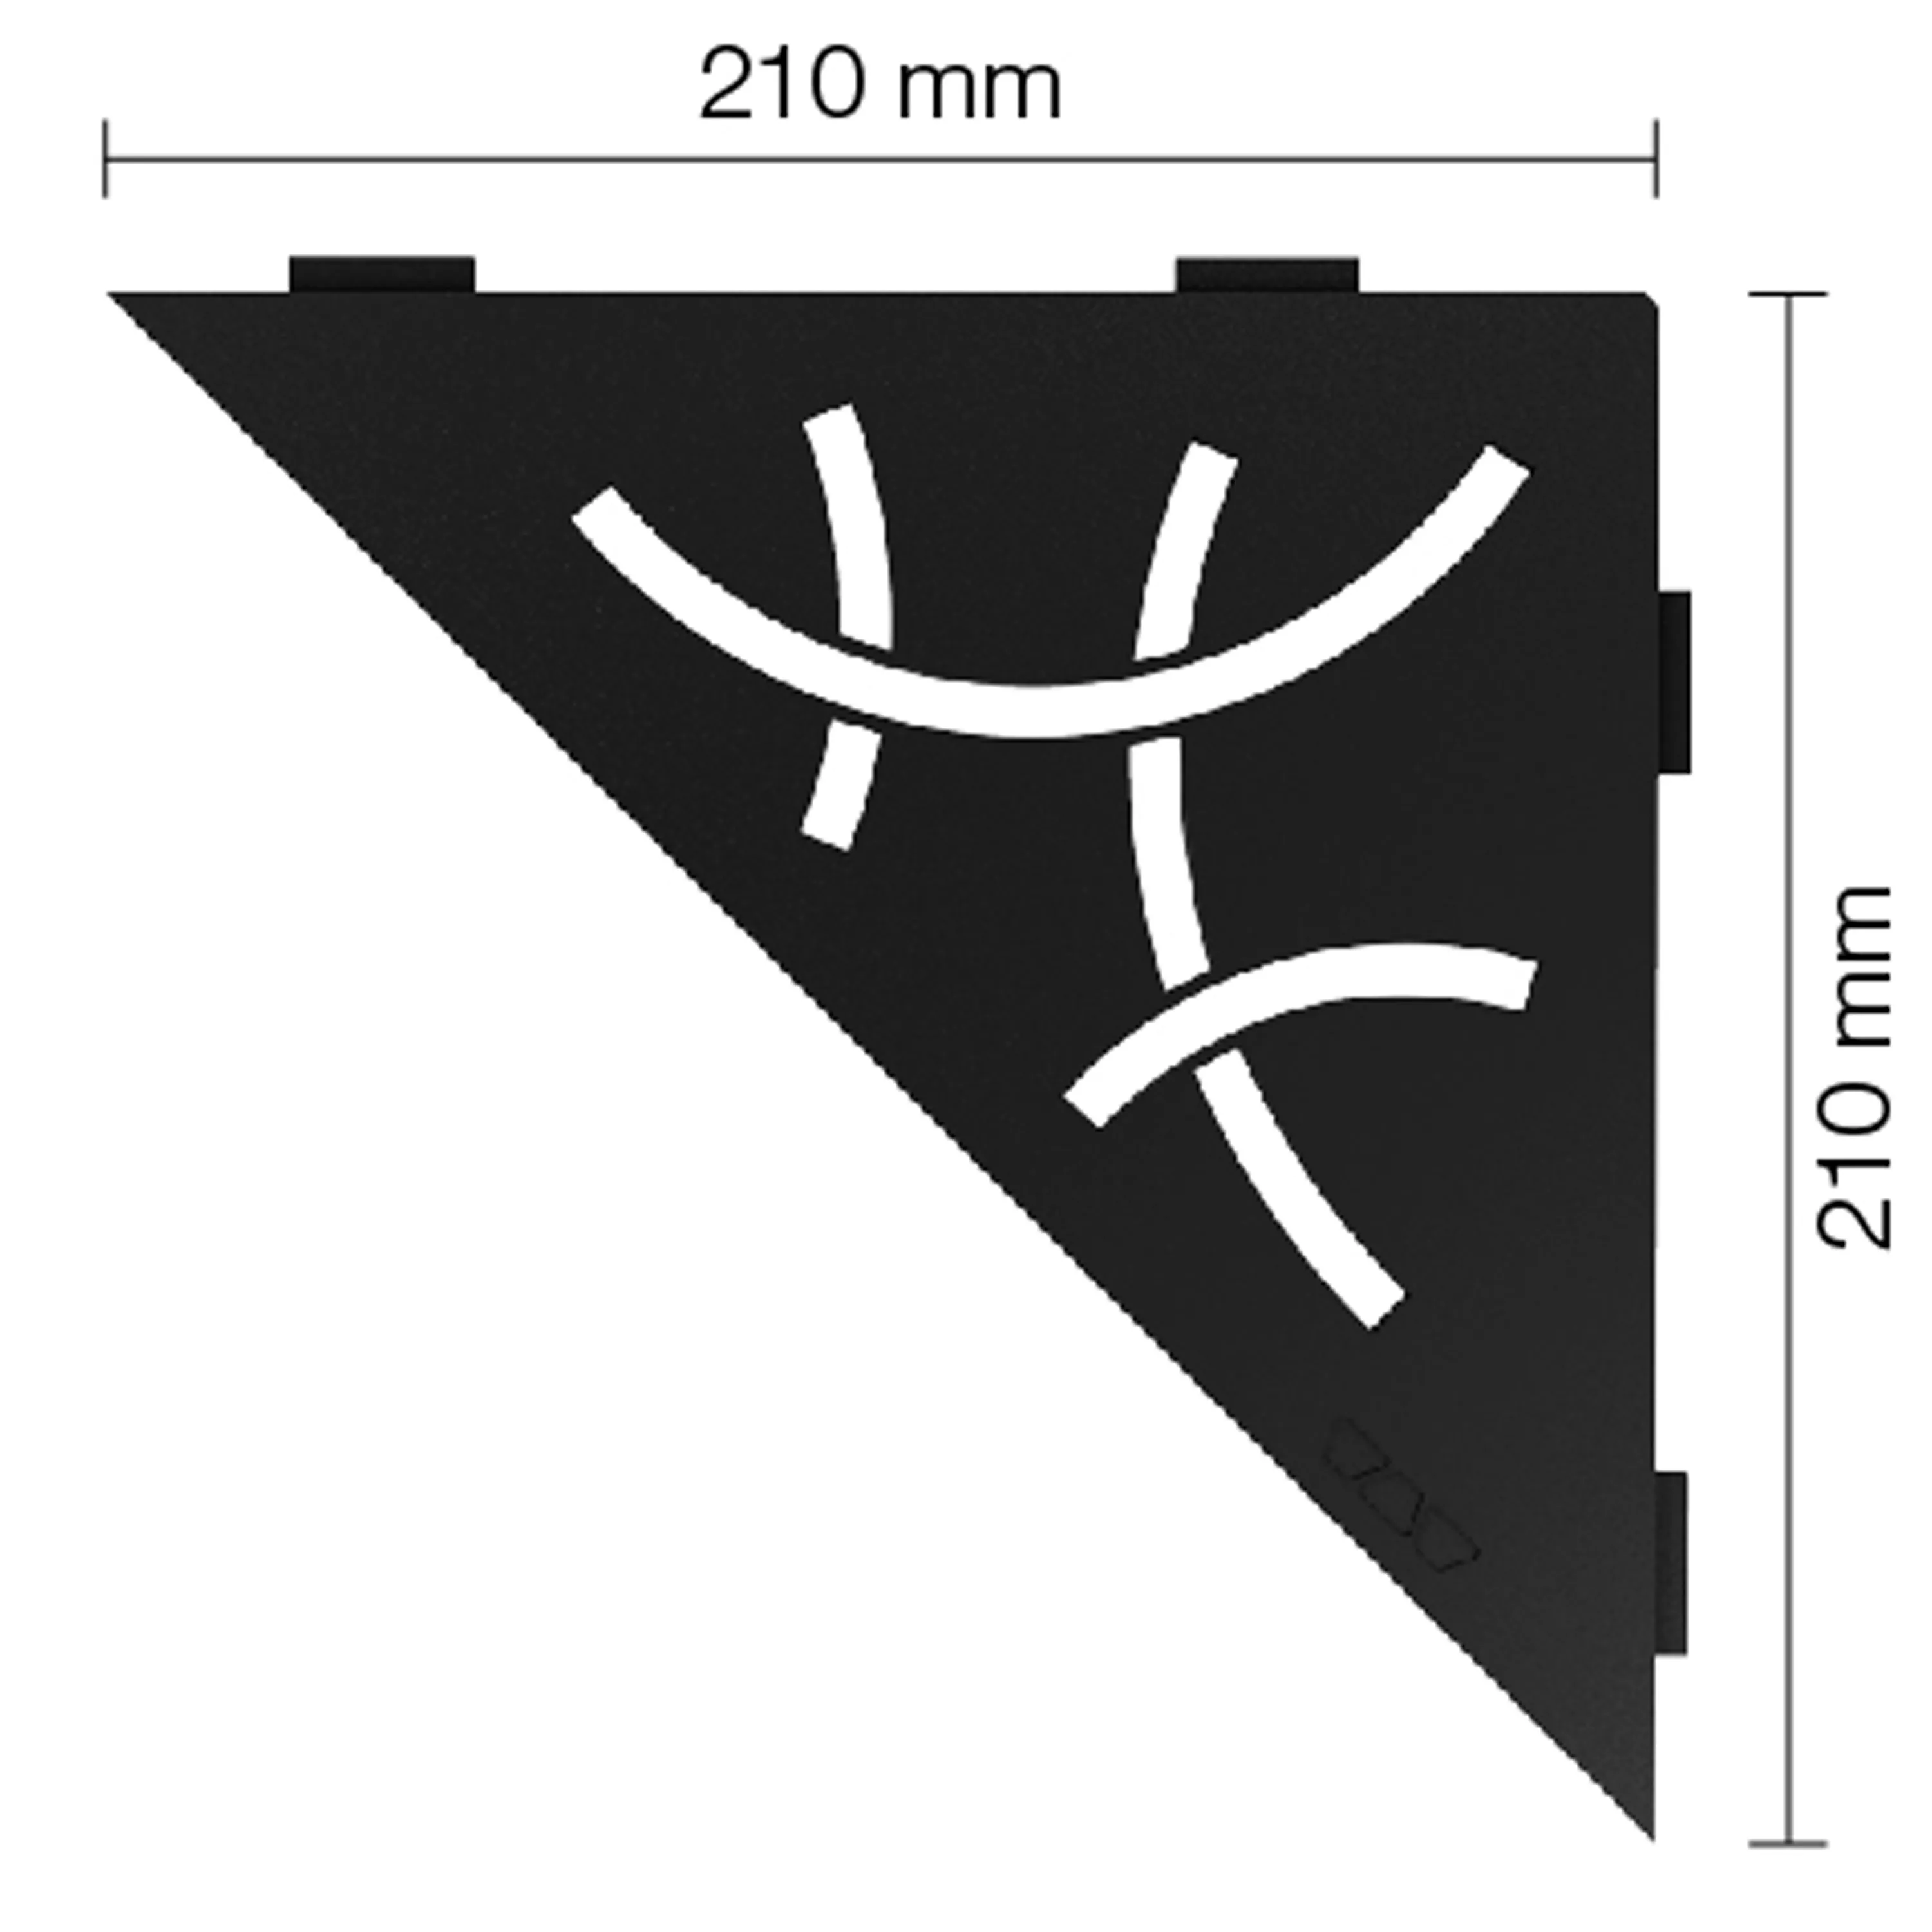 Schlüter falipolc háromszög 21x21cm Curve grafit fekete matt